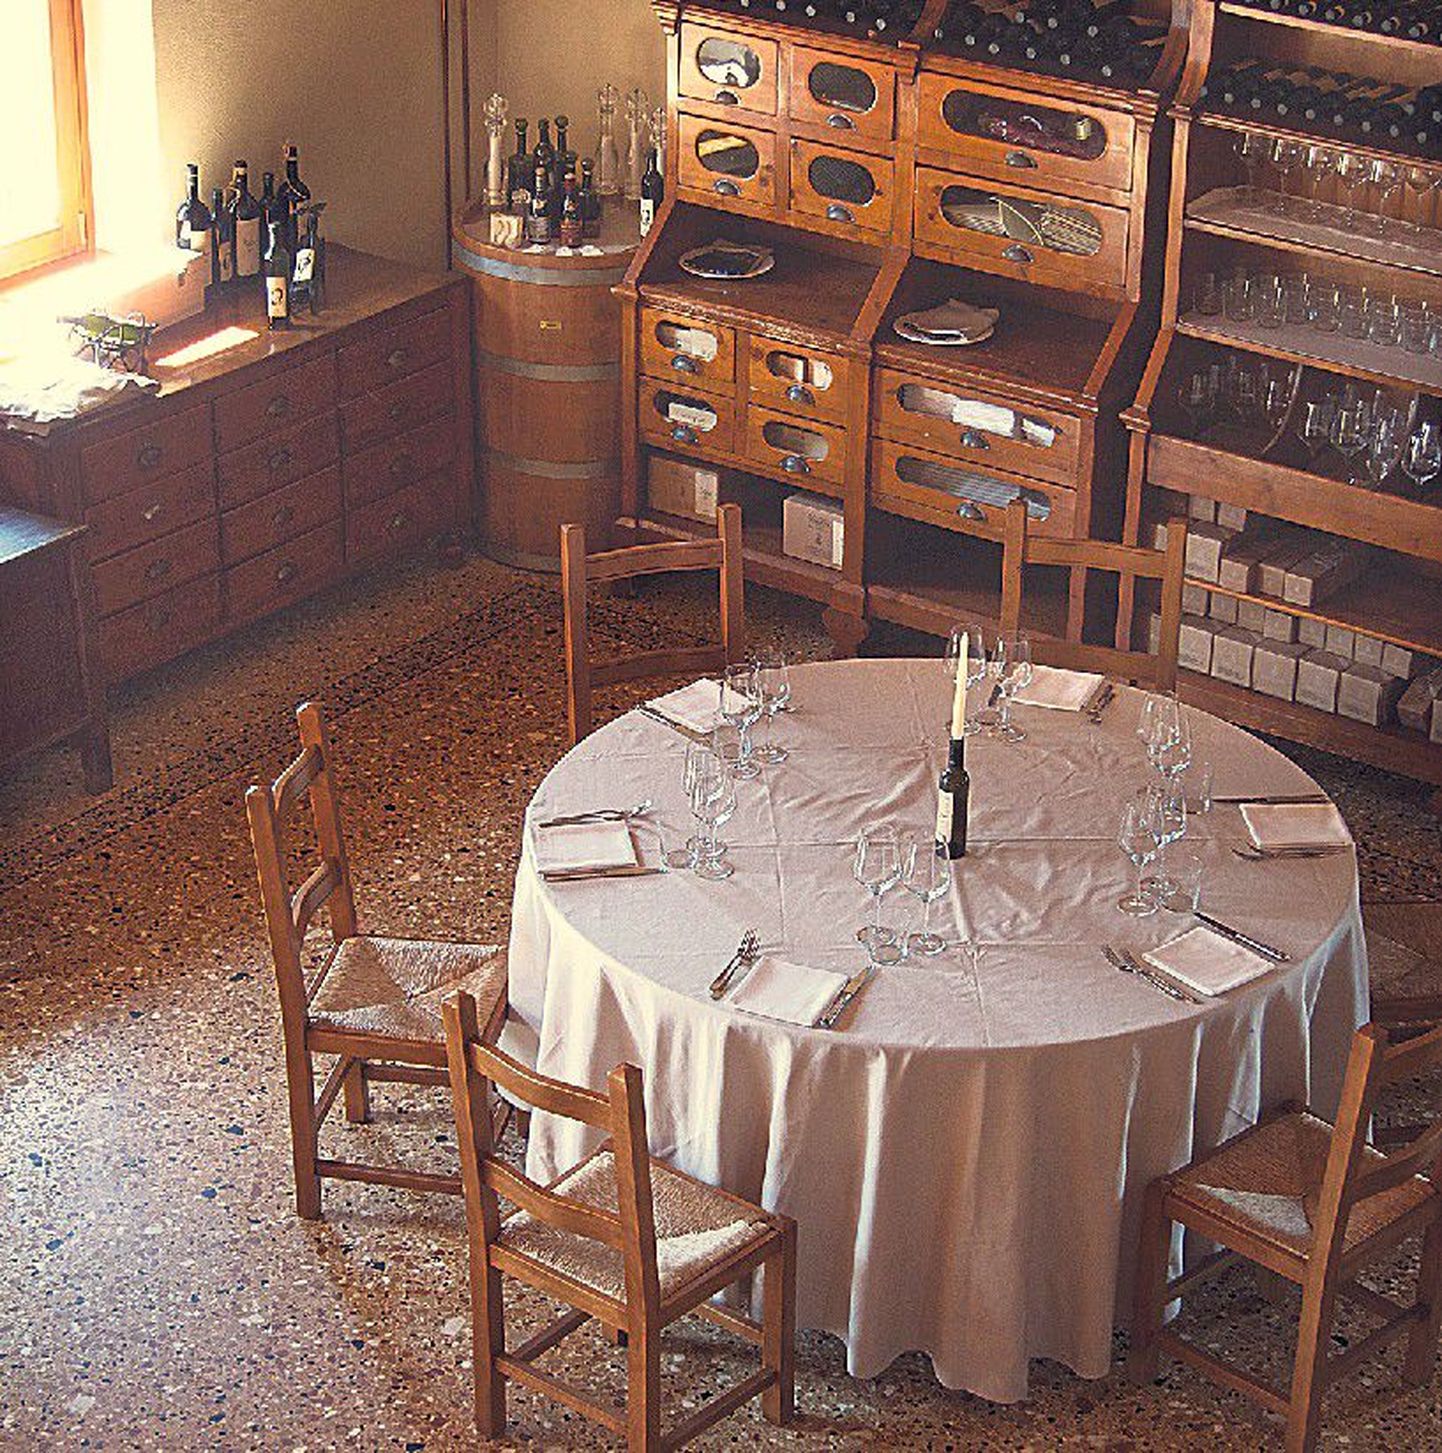 Mõnus ja külalislahke koht: Buglioni restorani kohtab passib öelda ka «Väga Valpolicella».